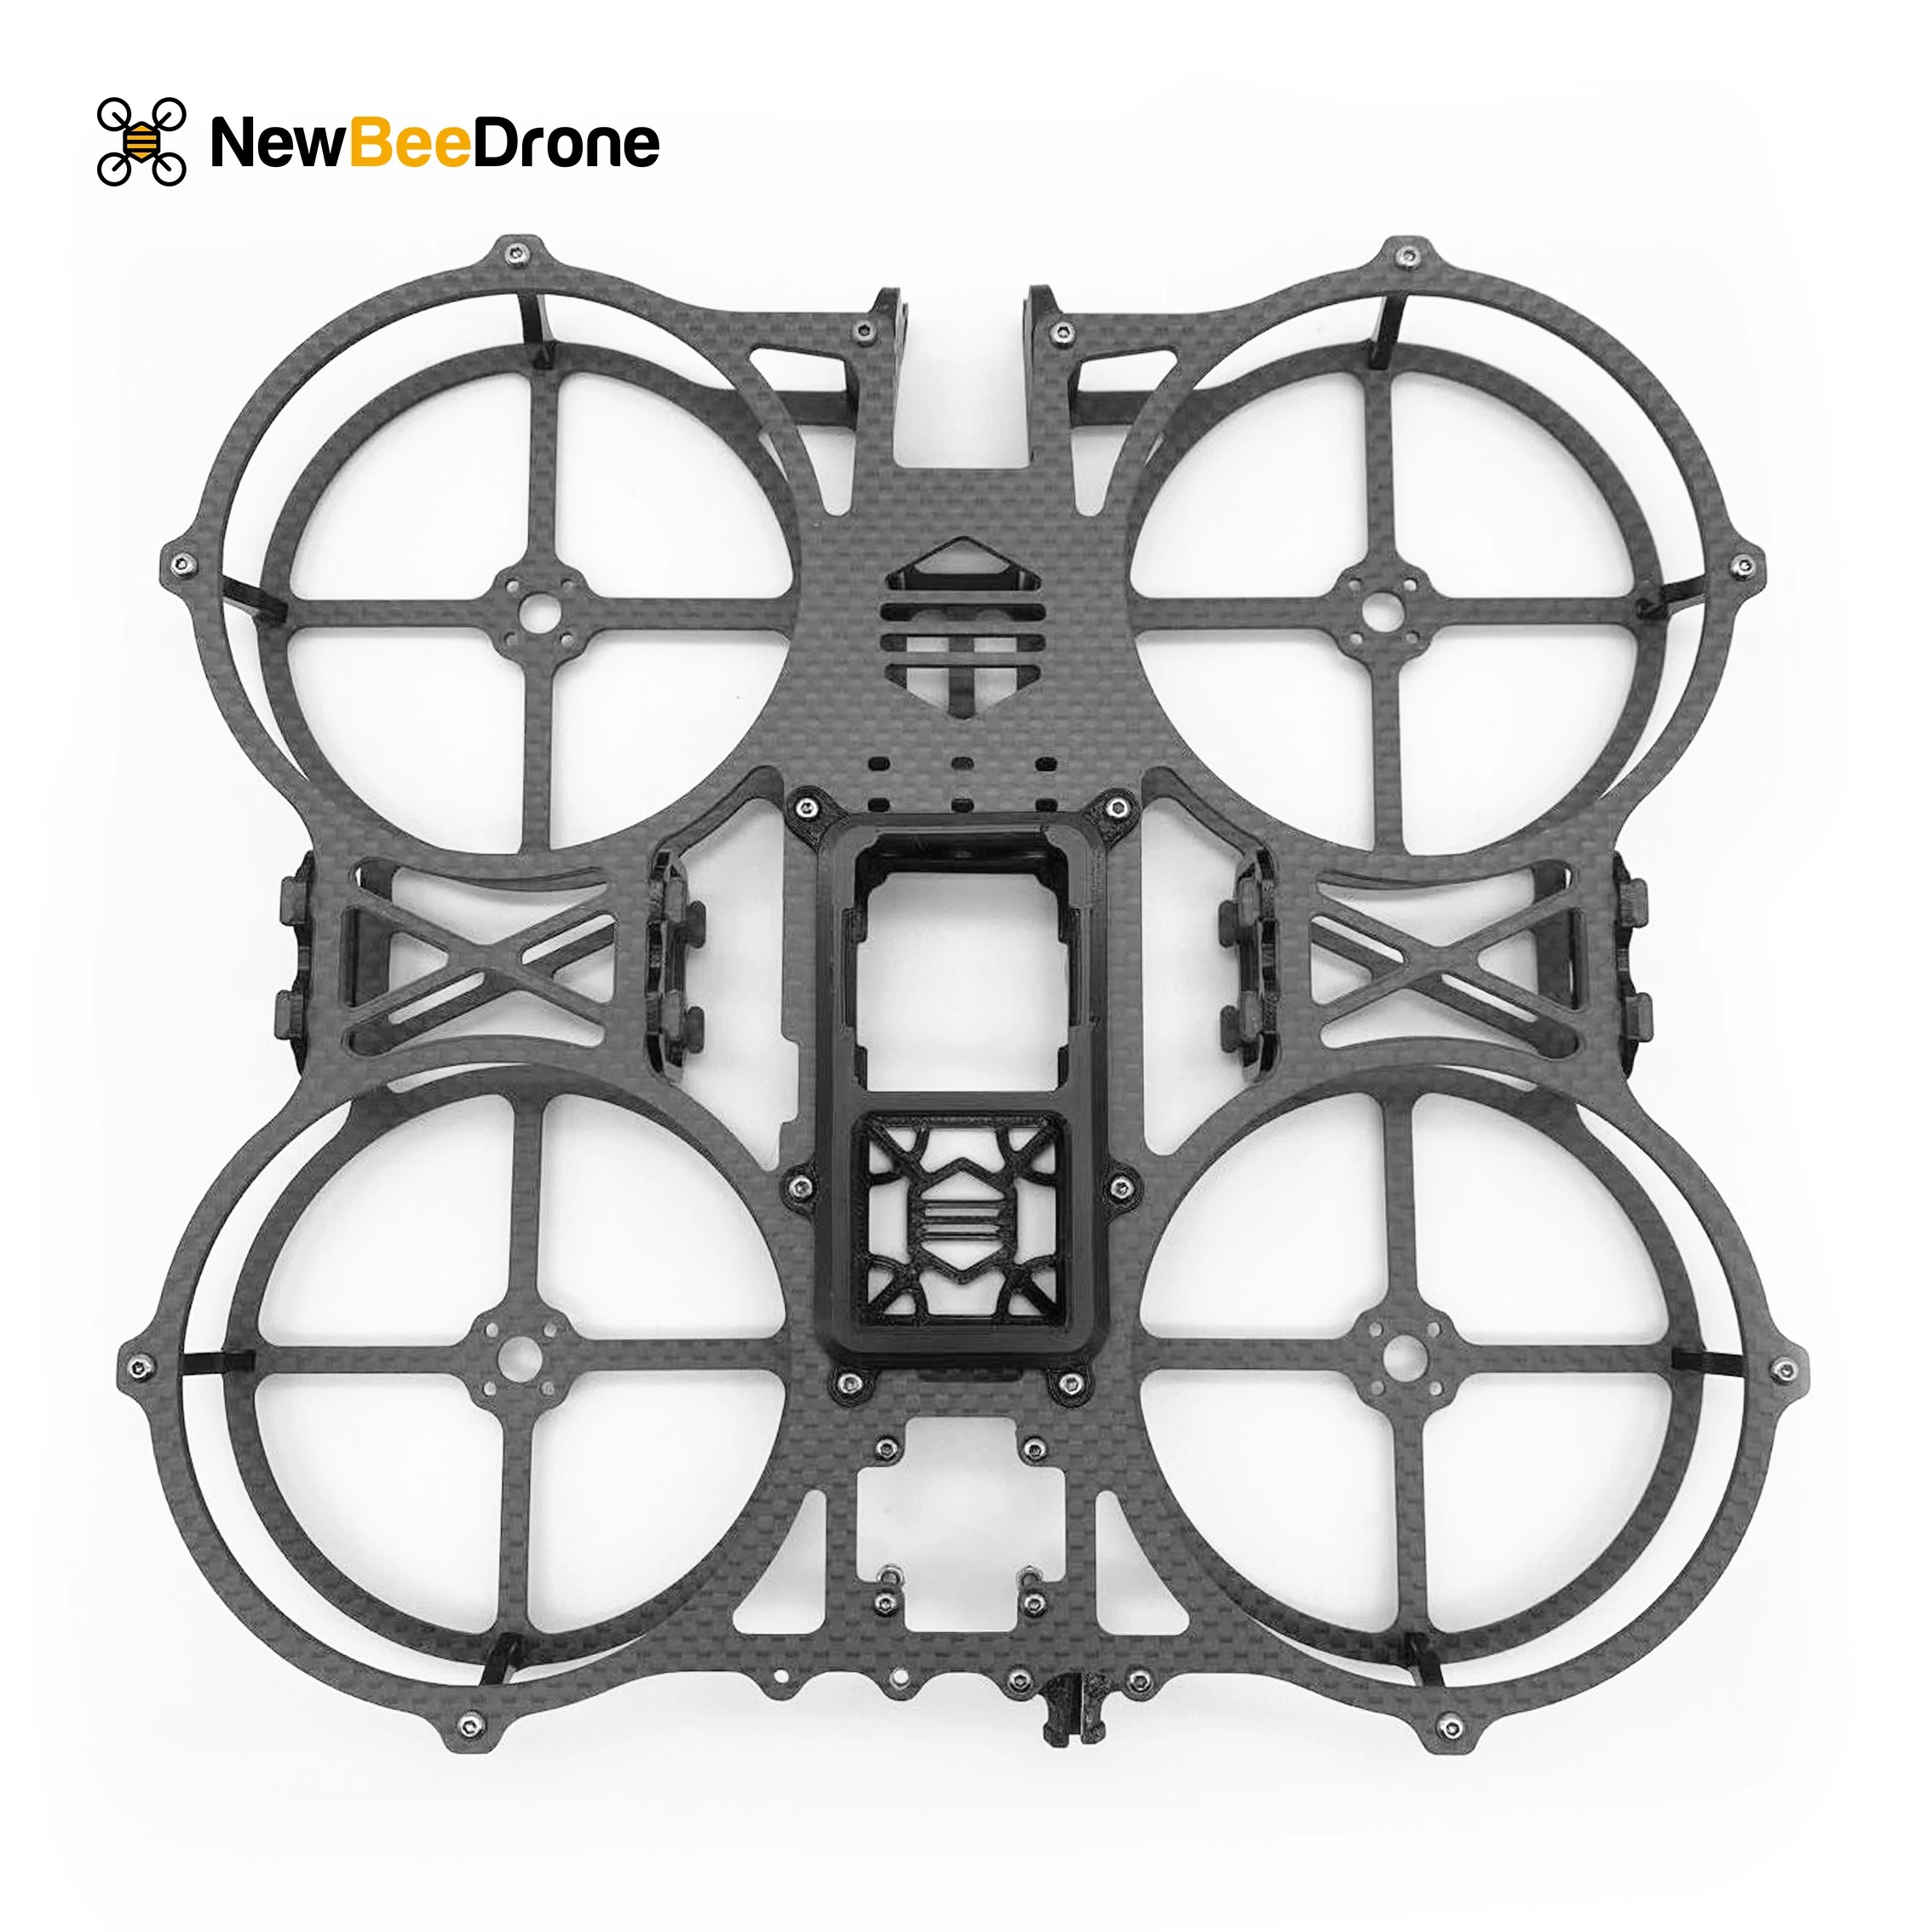 NewBeeDrone Invisi360 Drone Frame Kit